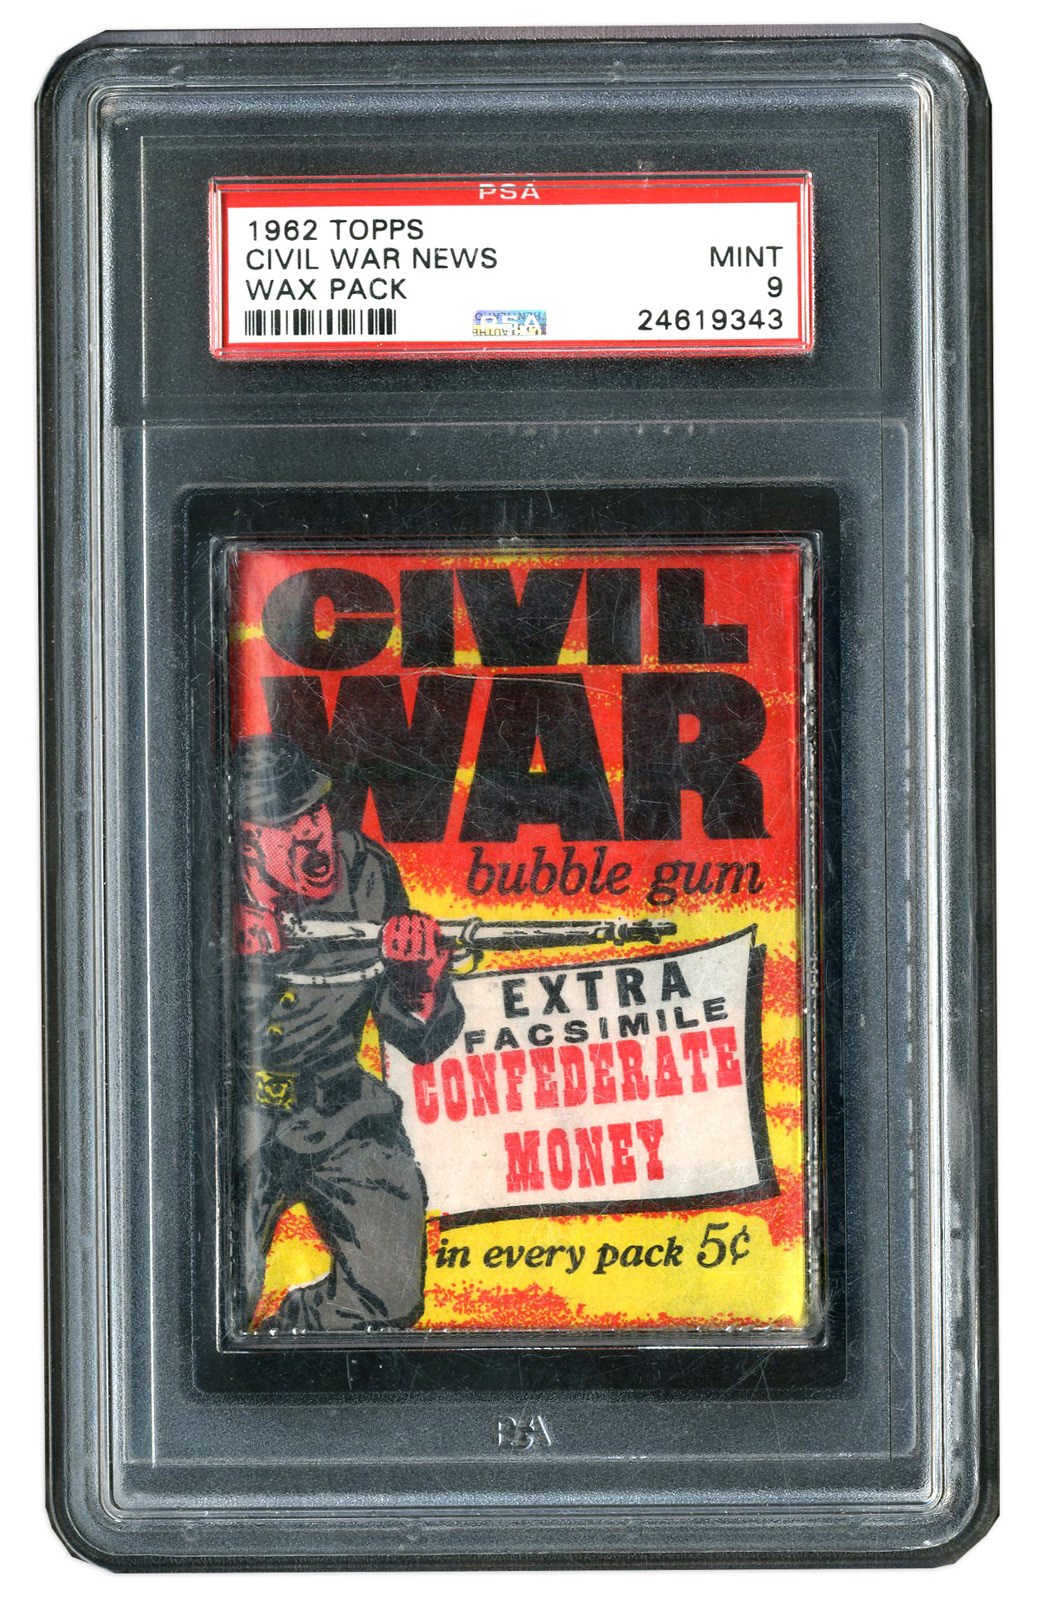 1962 Topps Civil War News Unopenend Wax Pack - PSA MINT 9